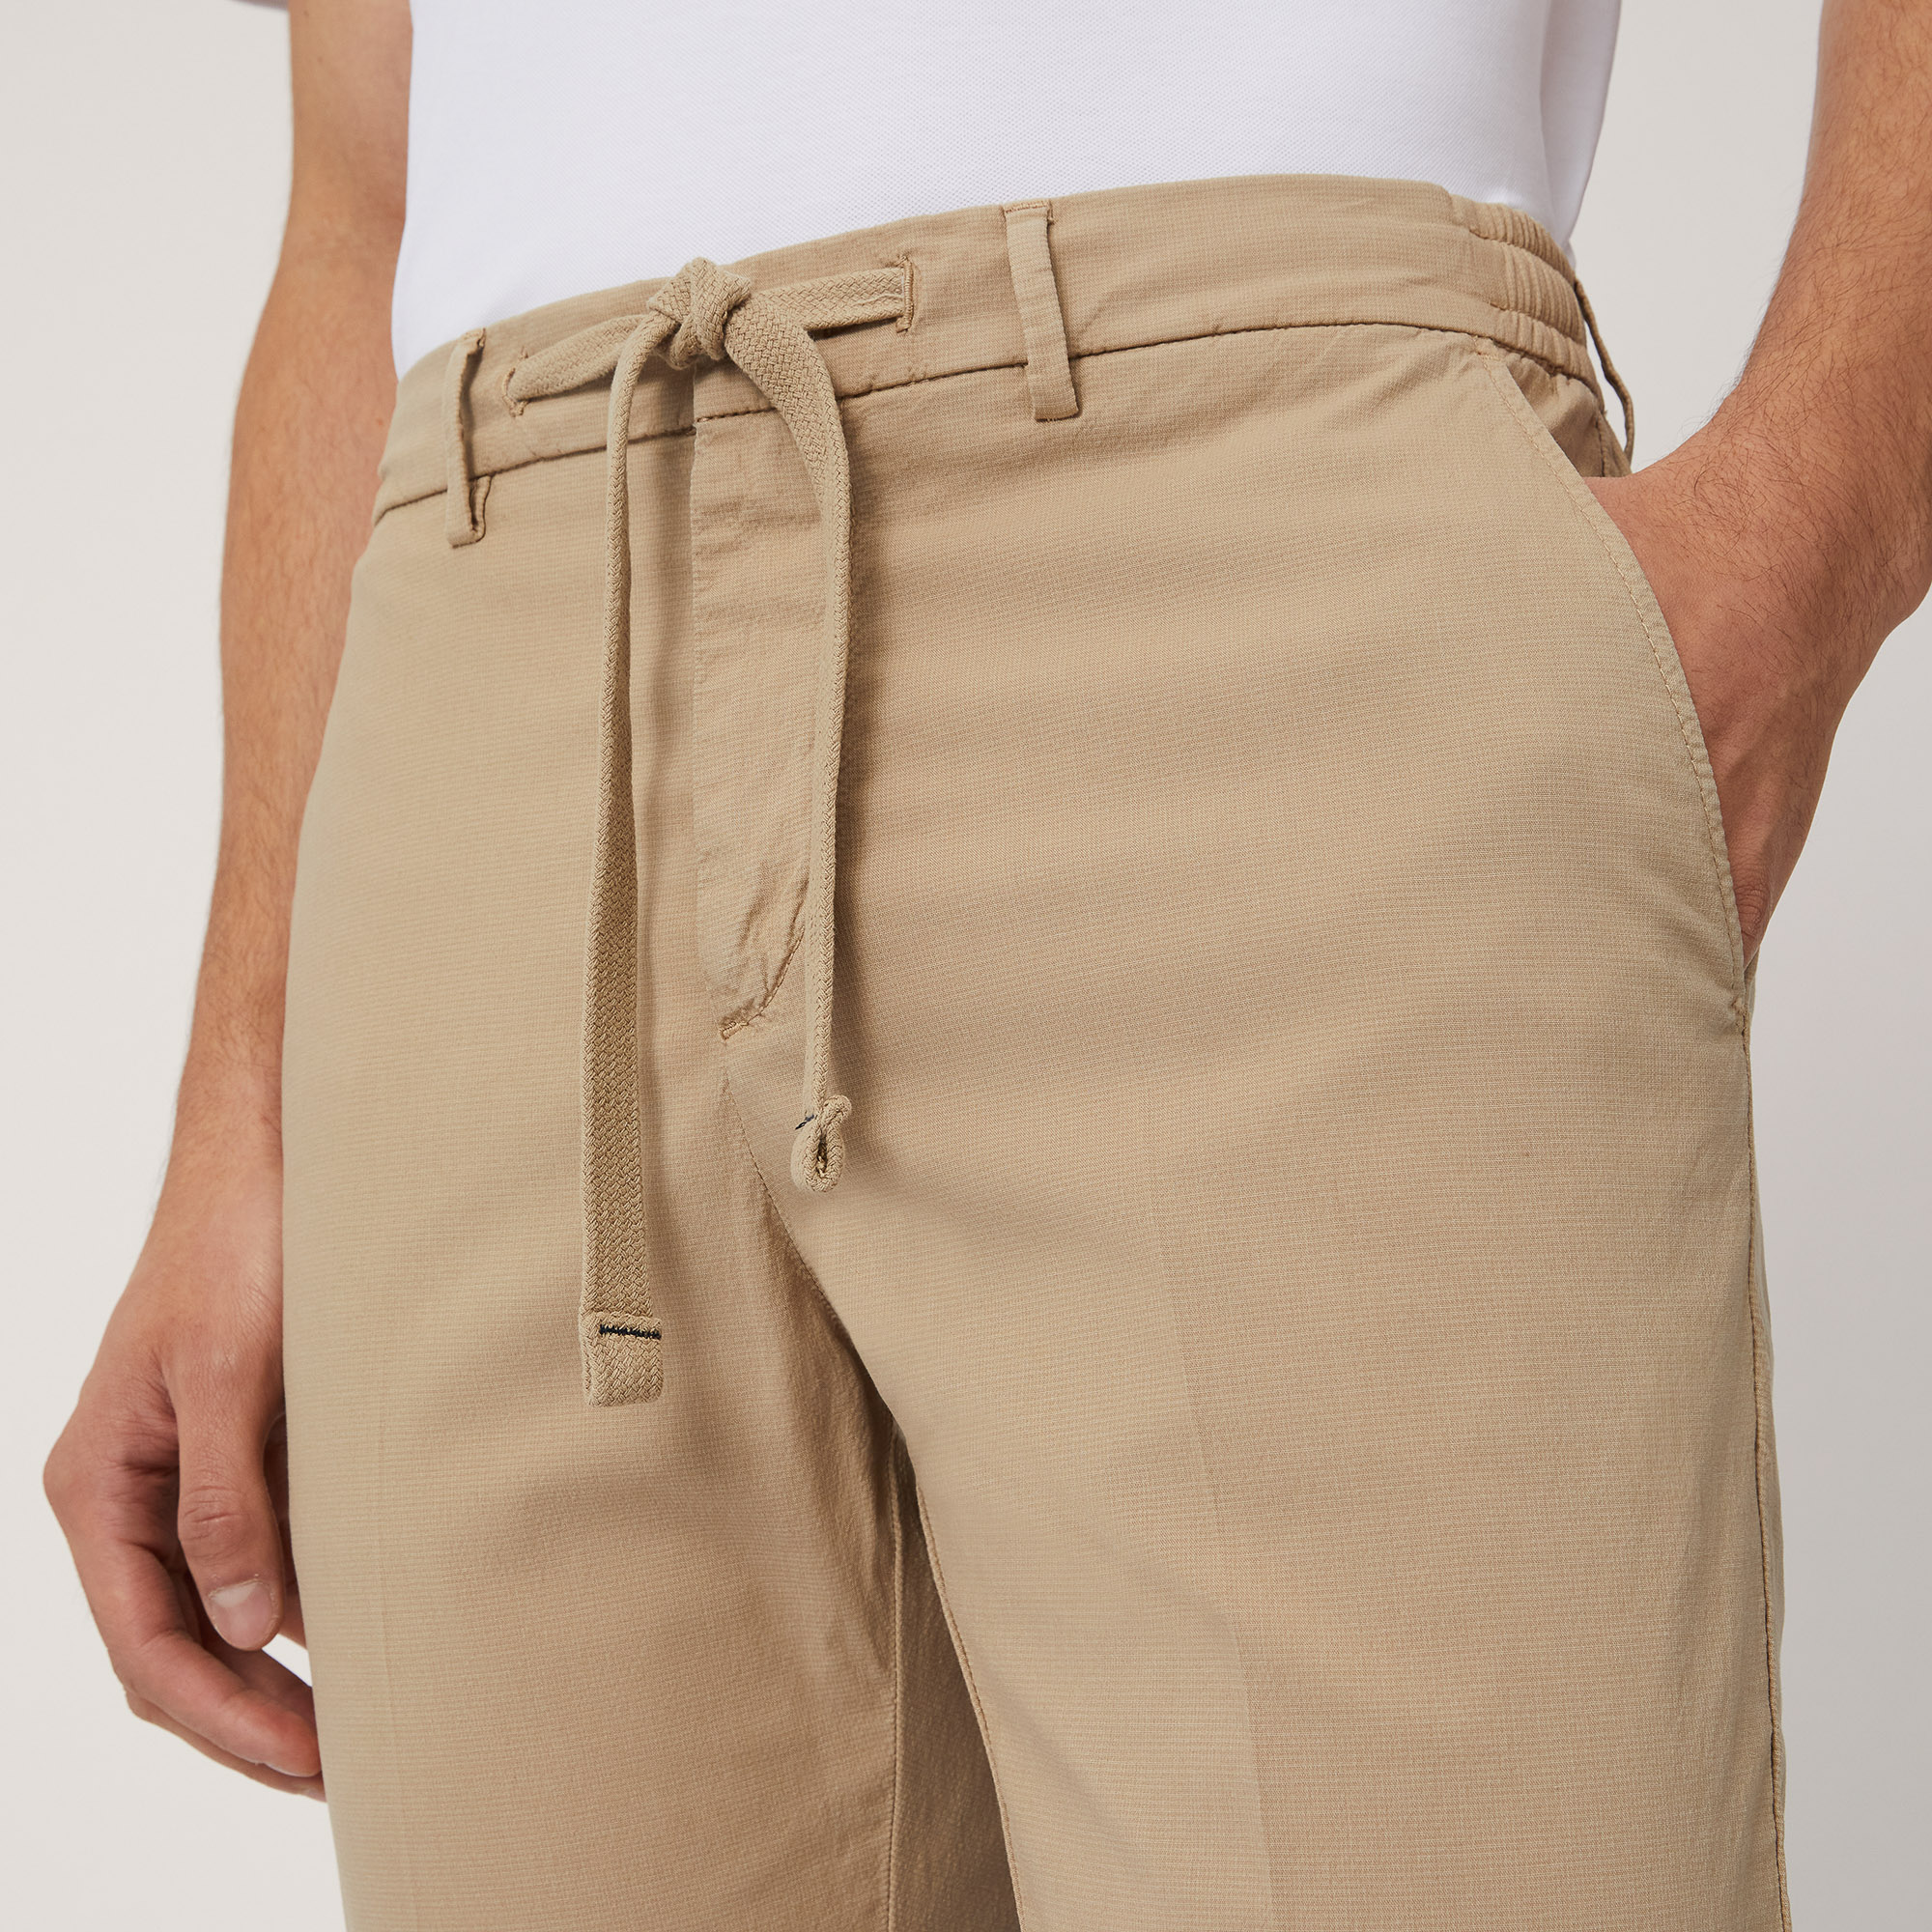 Cotton-Blend Jogging Pants, Beige, large image number 2